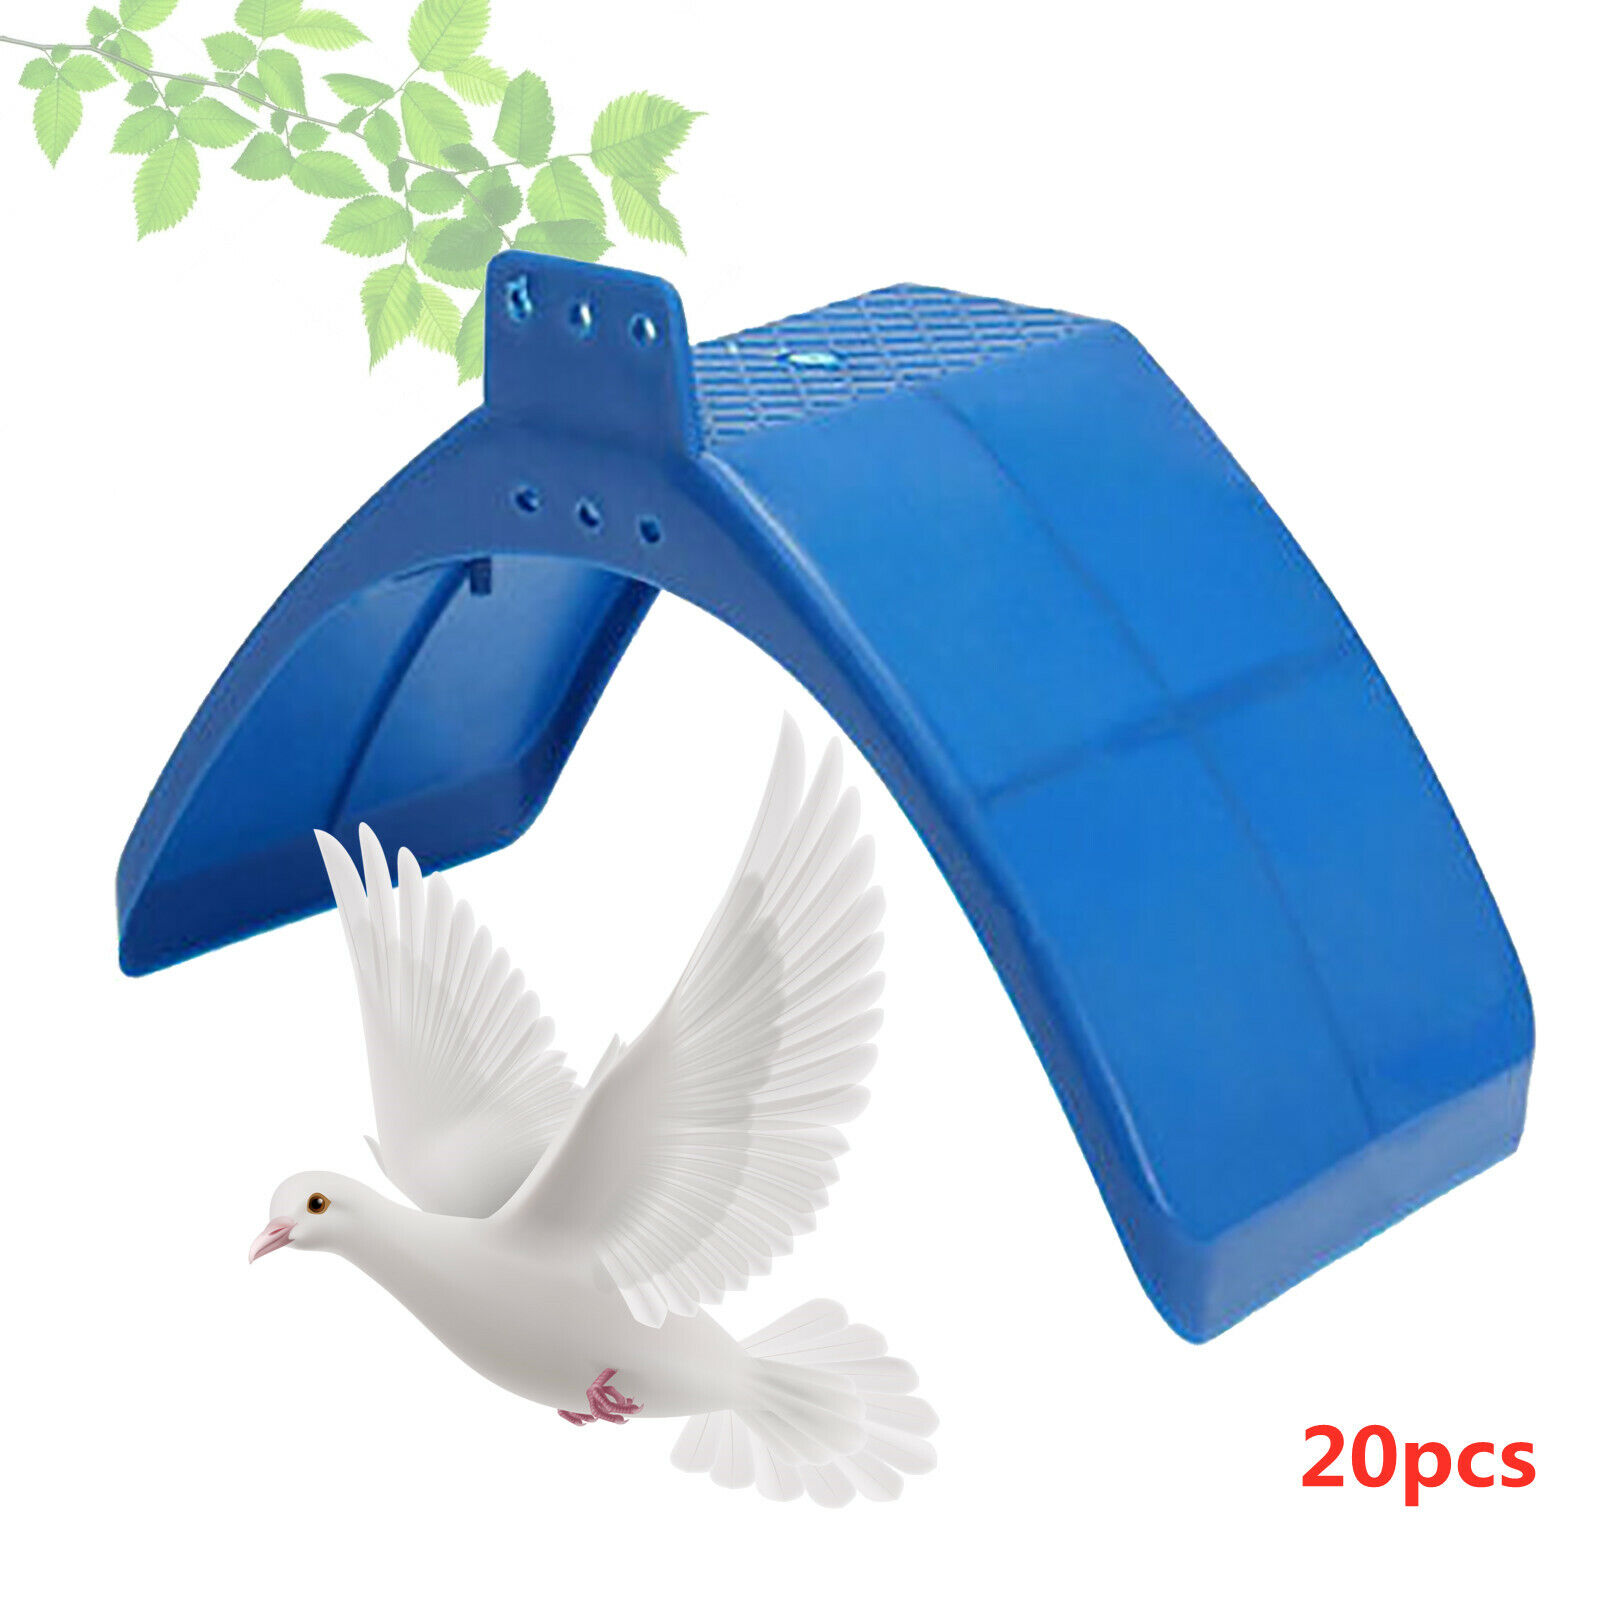 20pcs Pigeon Dove Rest Frame Pet Birds Perches Parrot Rest Arched Stand Blue Unbranded - фотография #5